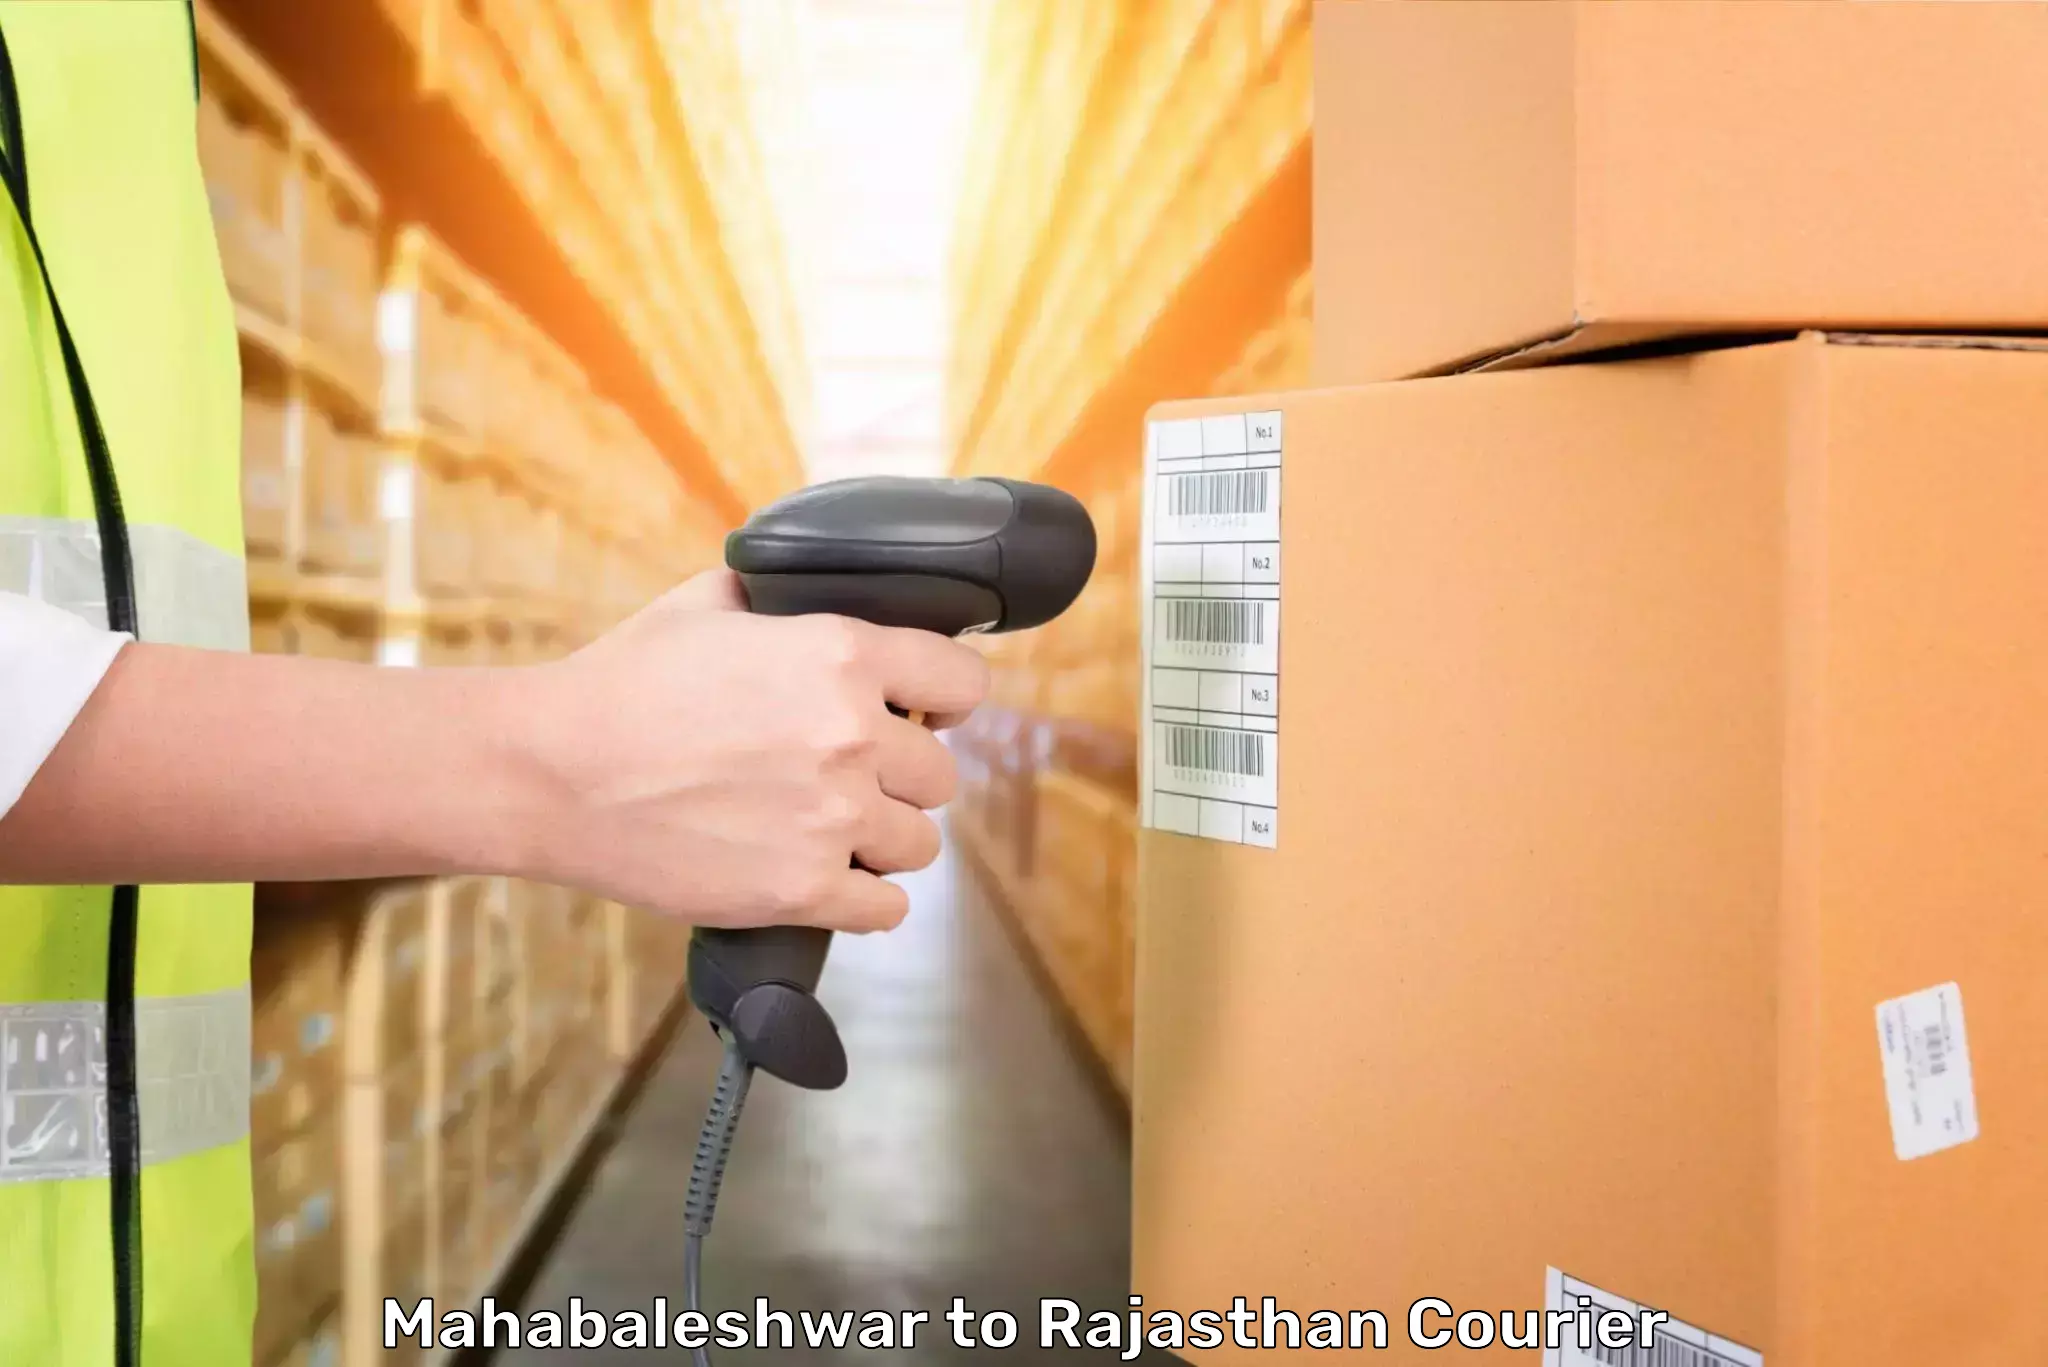 Baggage shipping experience Mahabaleshwar to Rajasthan